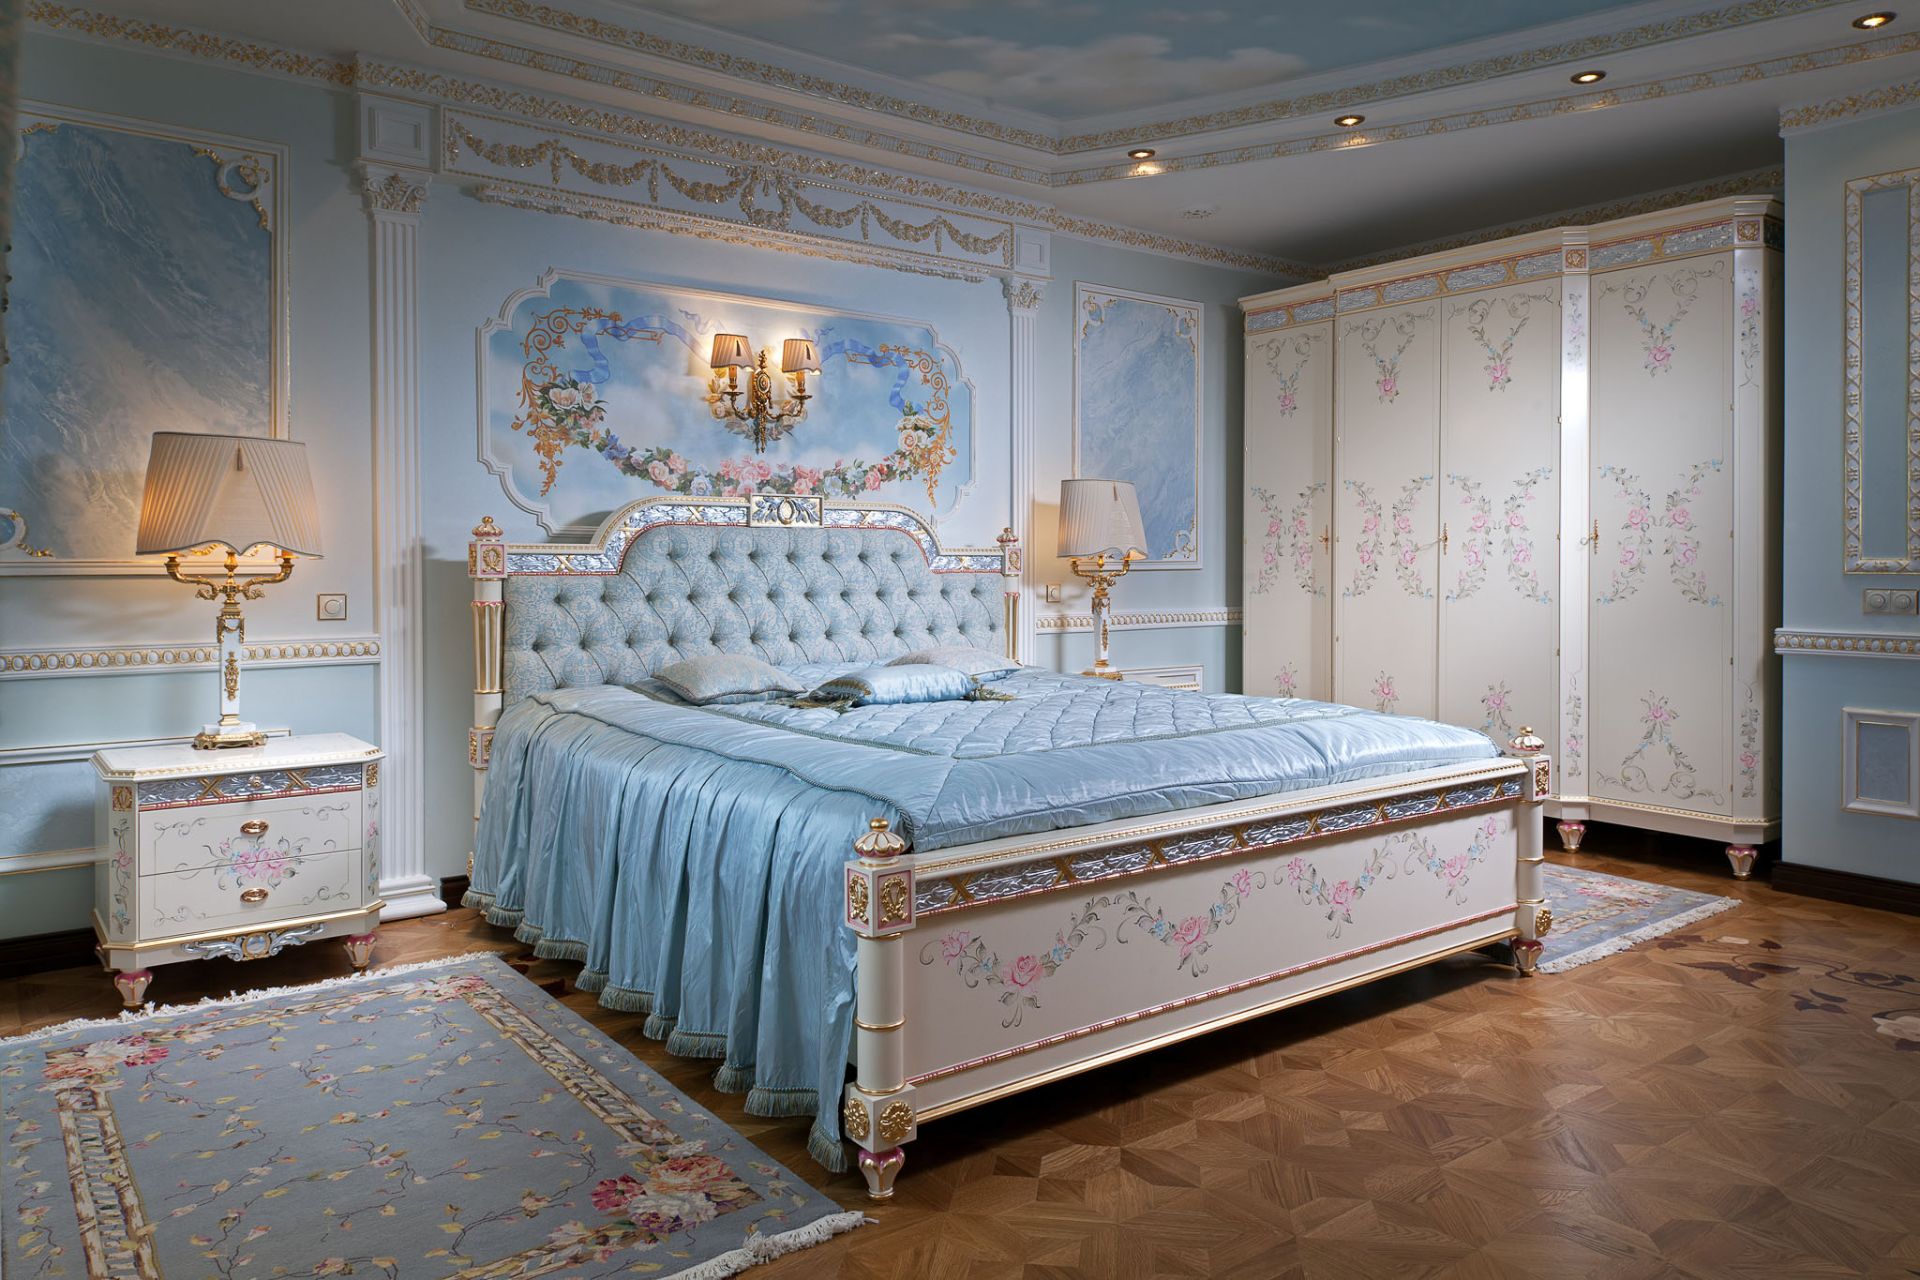 Bedroom Malvina in azure tones